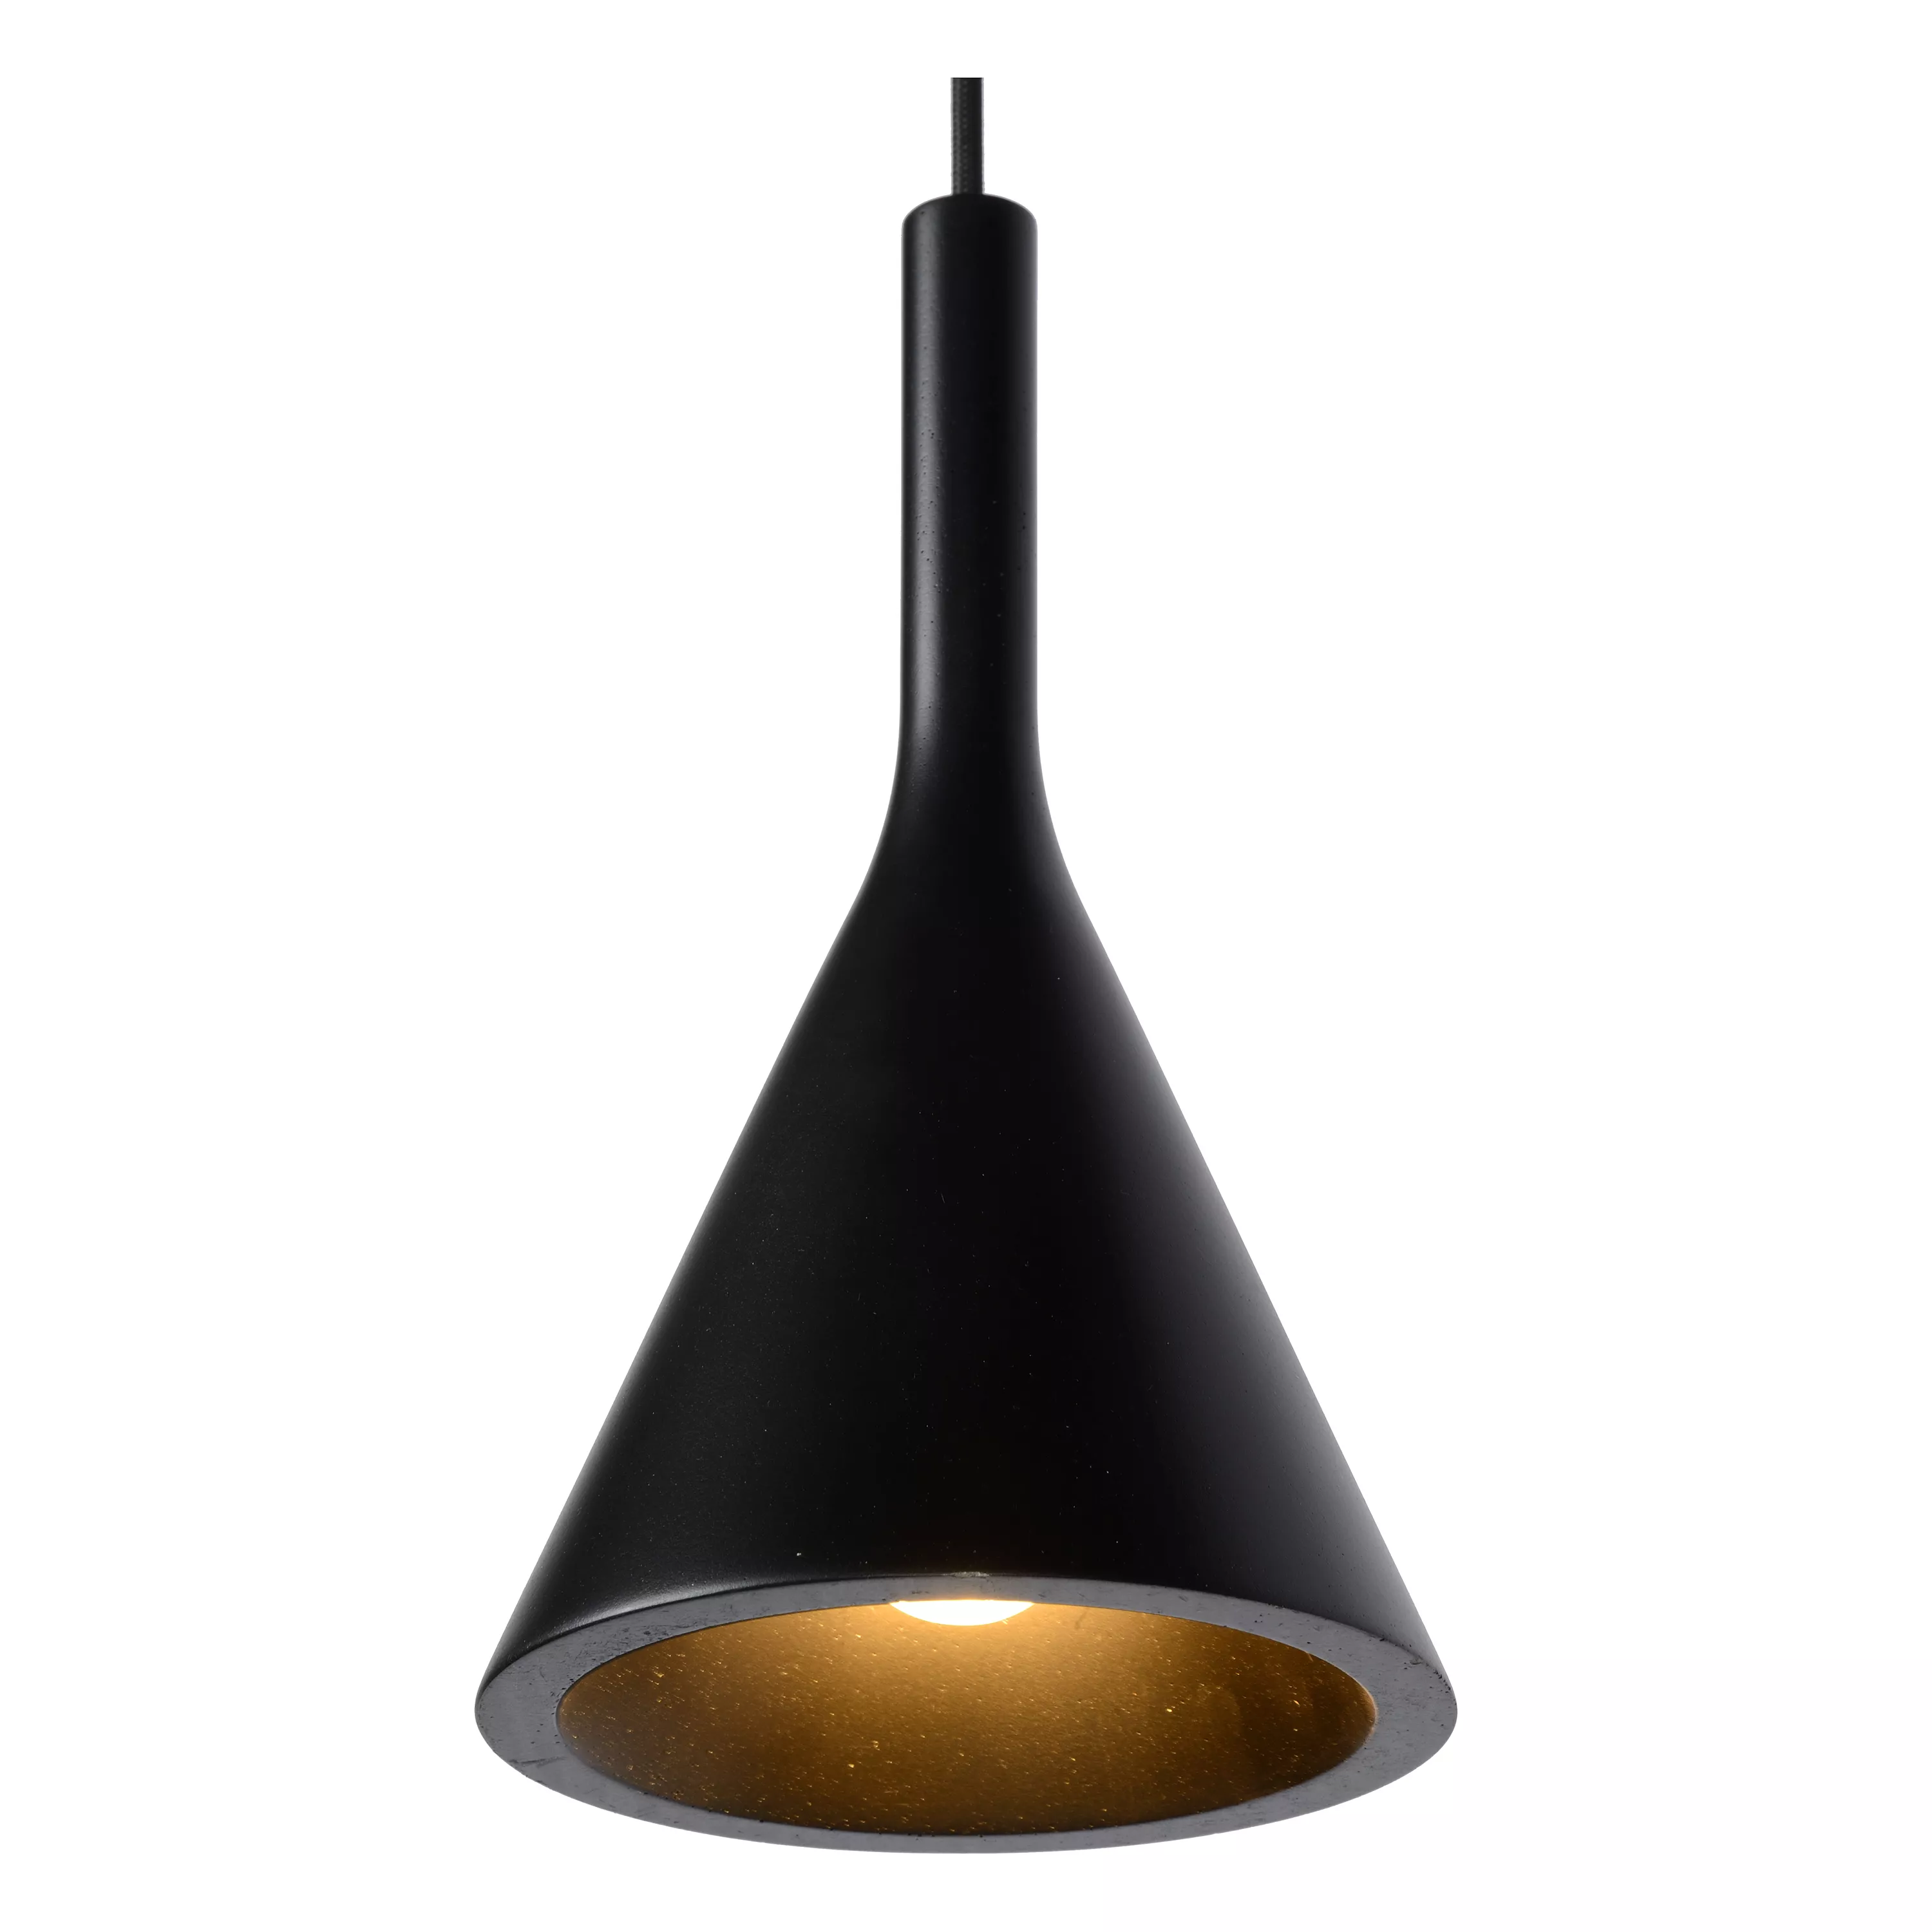 Elegantné závesné svietidlo Gipsy so 4 tienidlami, ktoré sa hodí do každého interiéru. V minimalistickom čiernom vyhotovení.